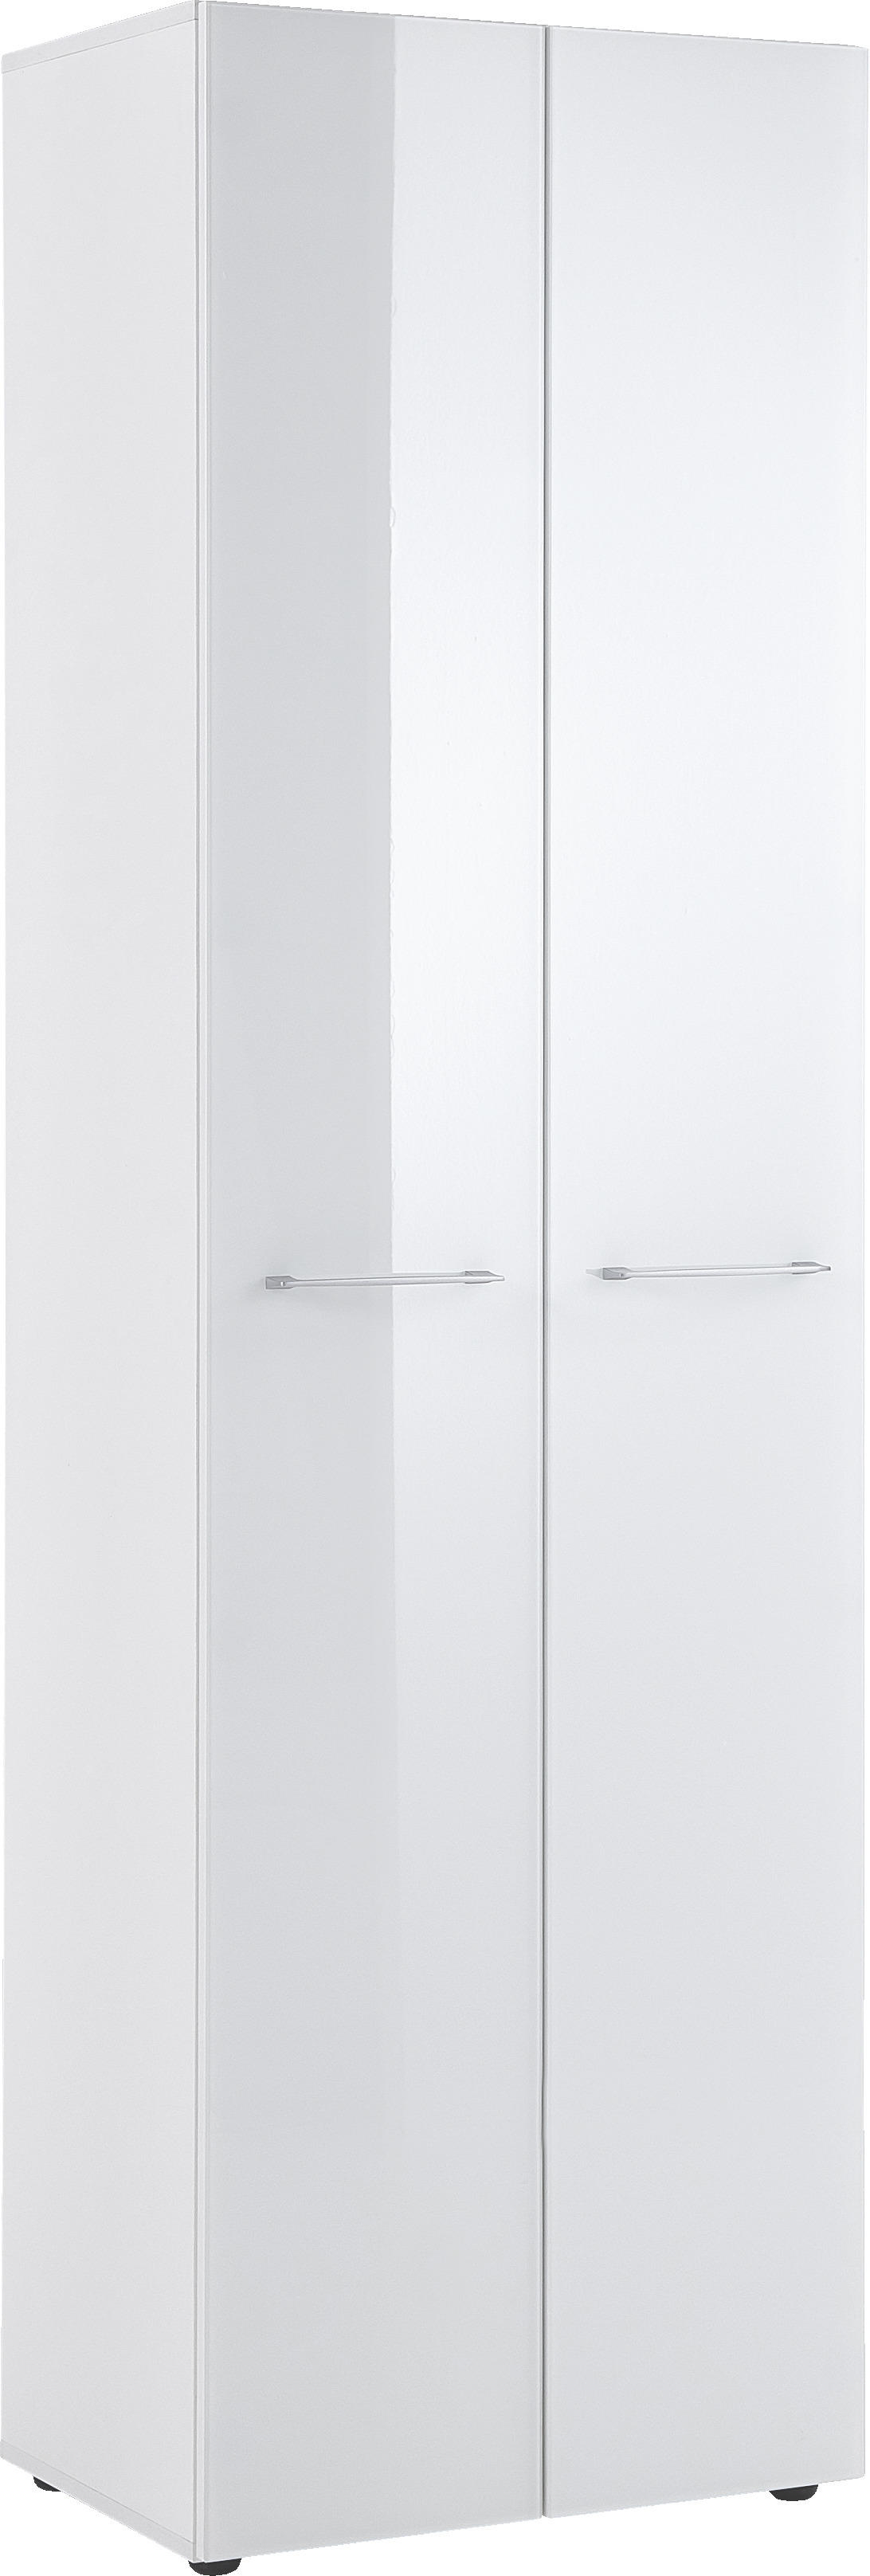 Garderobenschrank ansehen hier in Weiß mit Glas